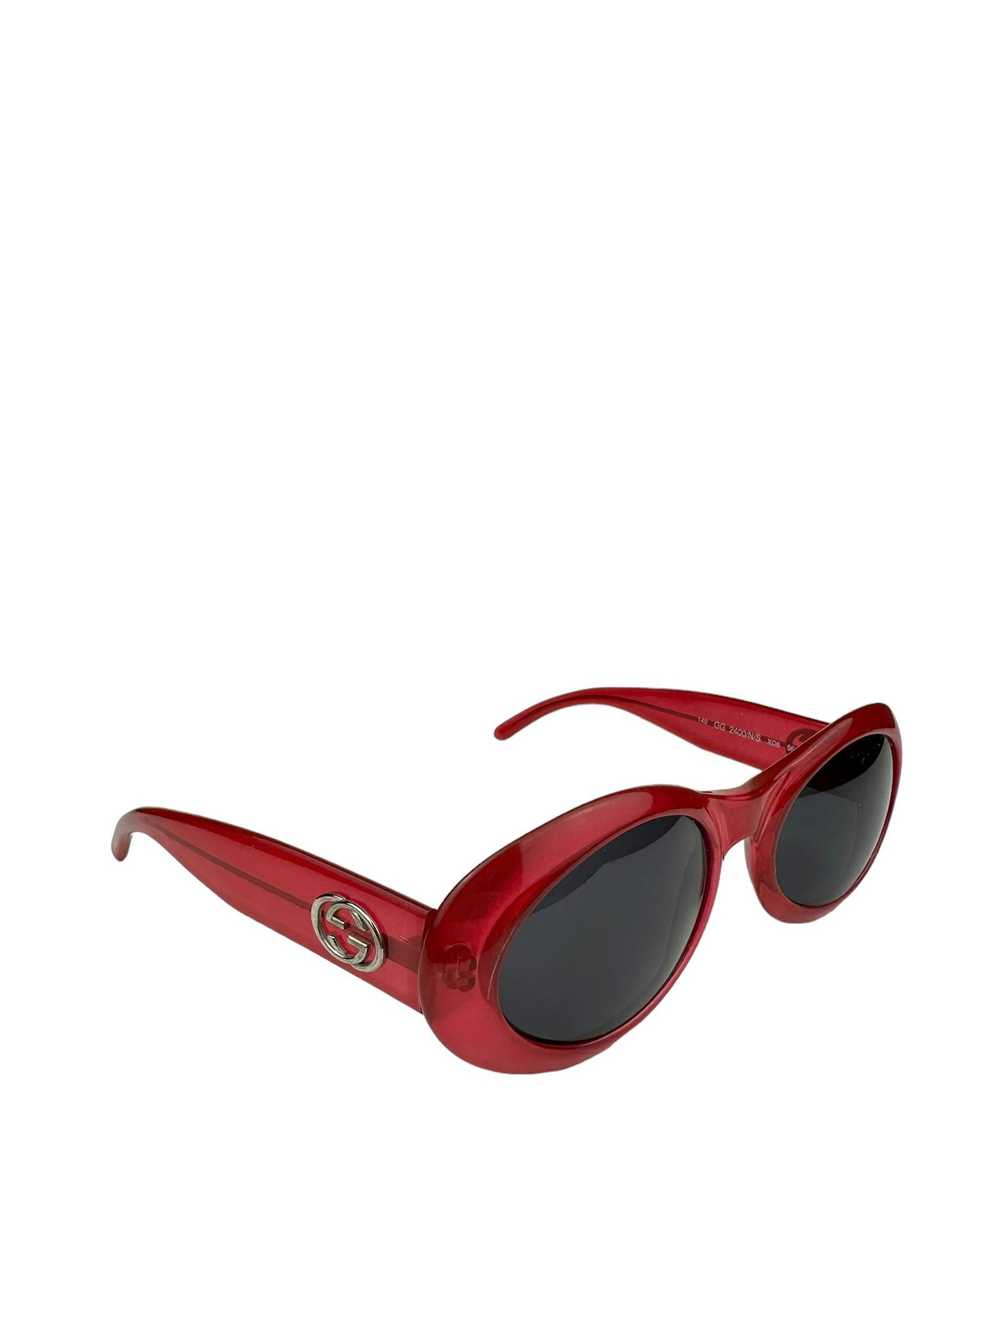 Gucci Gucci GG 2400 Cobain Style Sunglasses - image 2